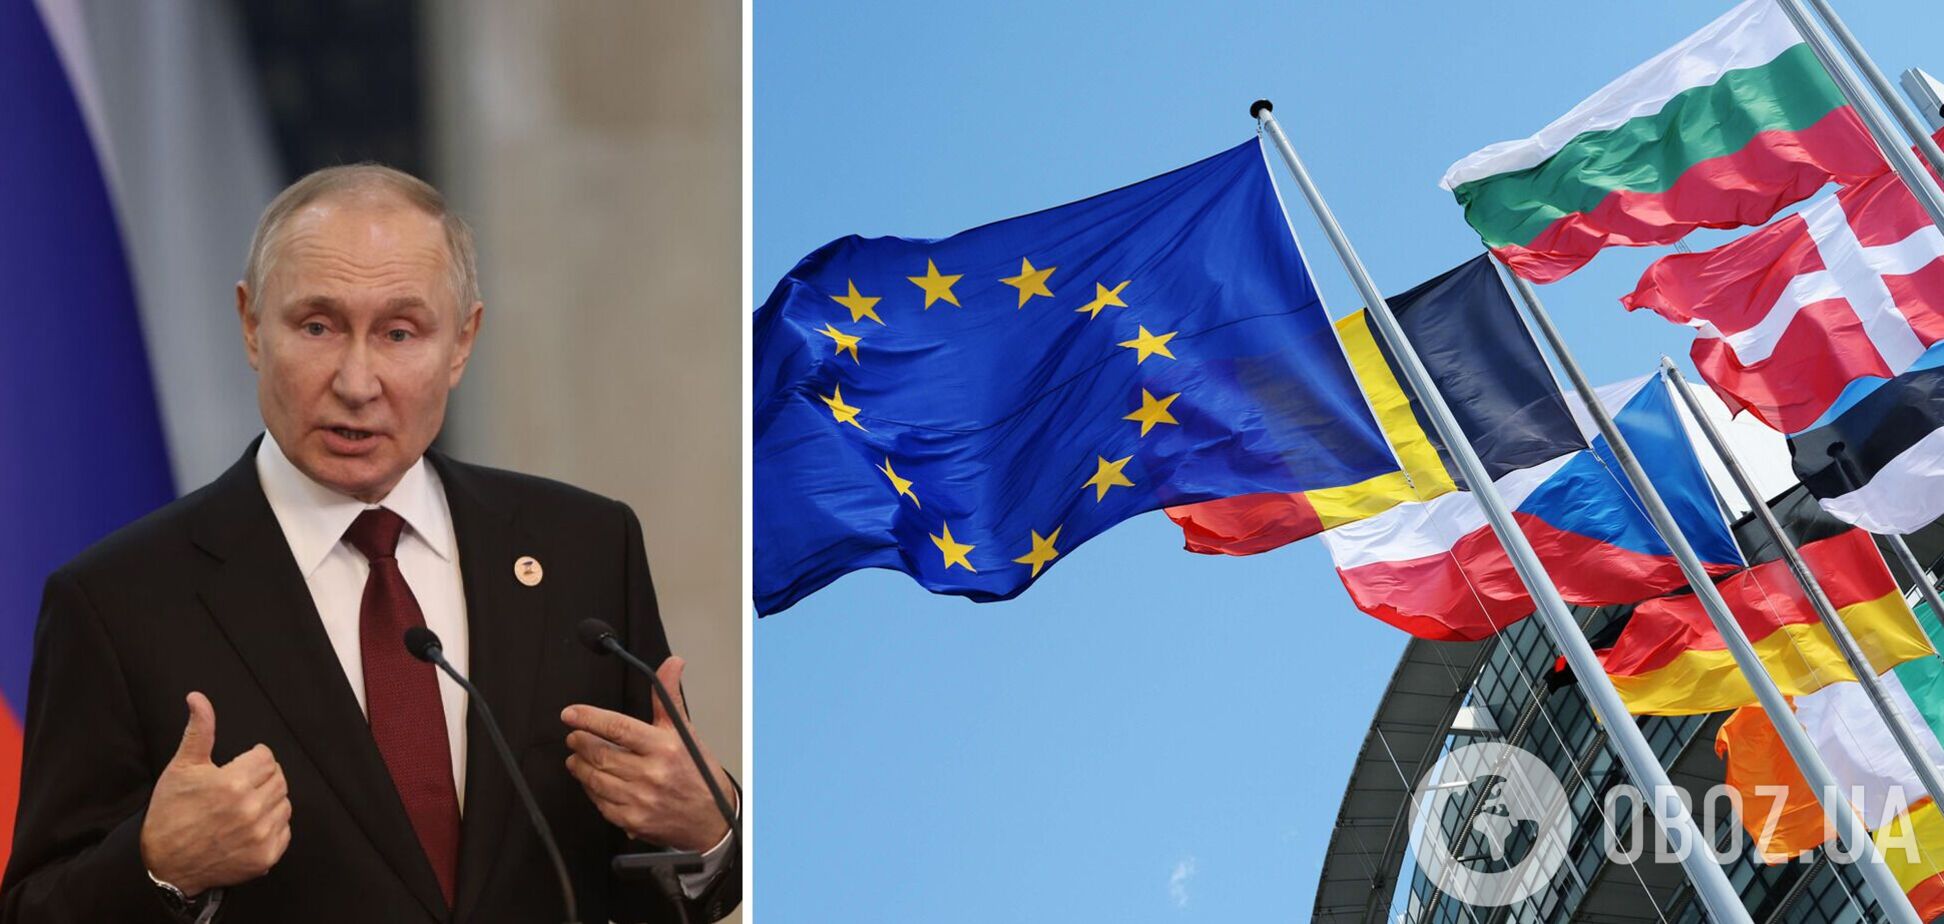 'Запрошення отримали': країни ЄС готують спільну відповідь на запрошення на 'інавгурацію' Путіна
